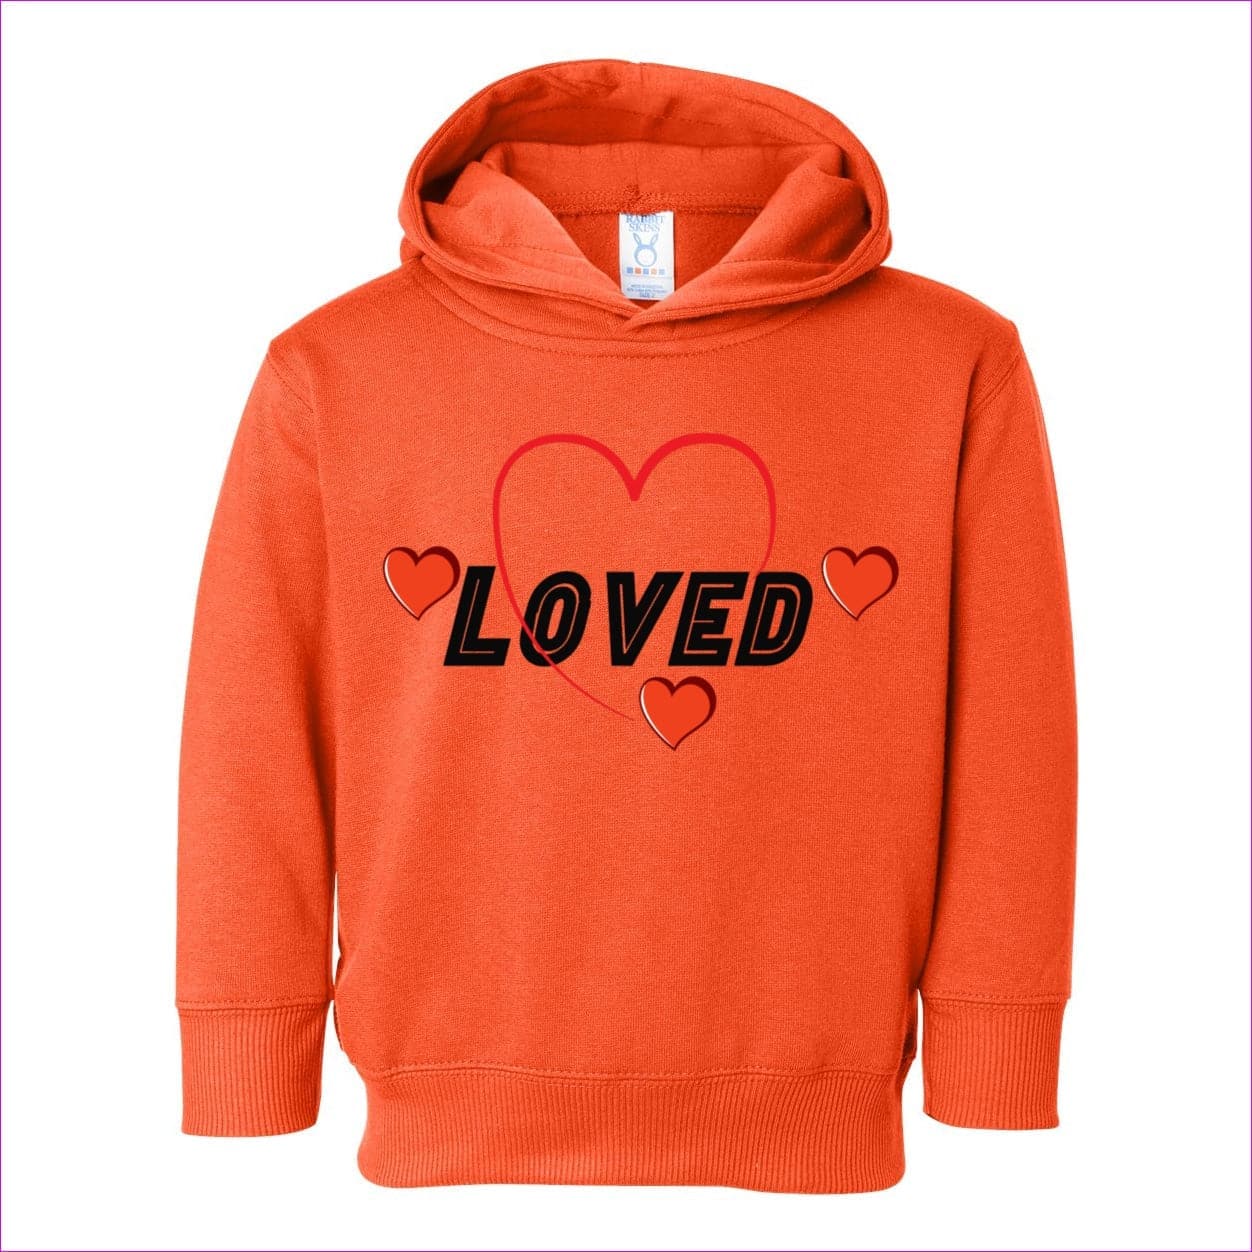 Orange - Loved Toddler Pullover Fleece Hoodie - kids hoodie at TFC&H Co.